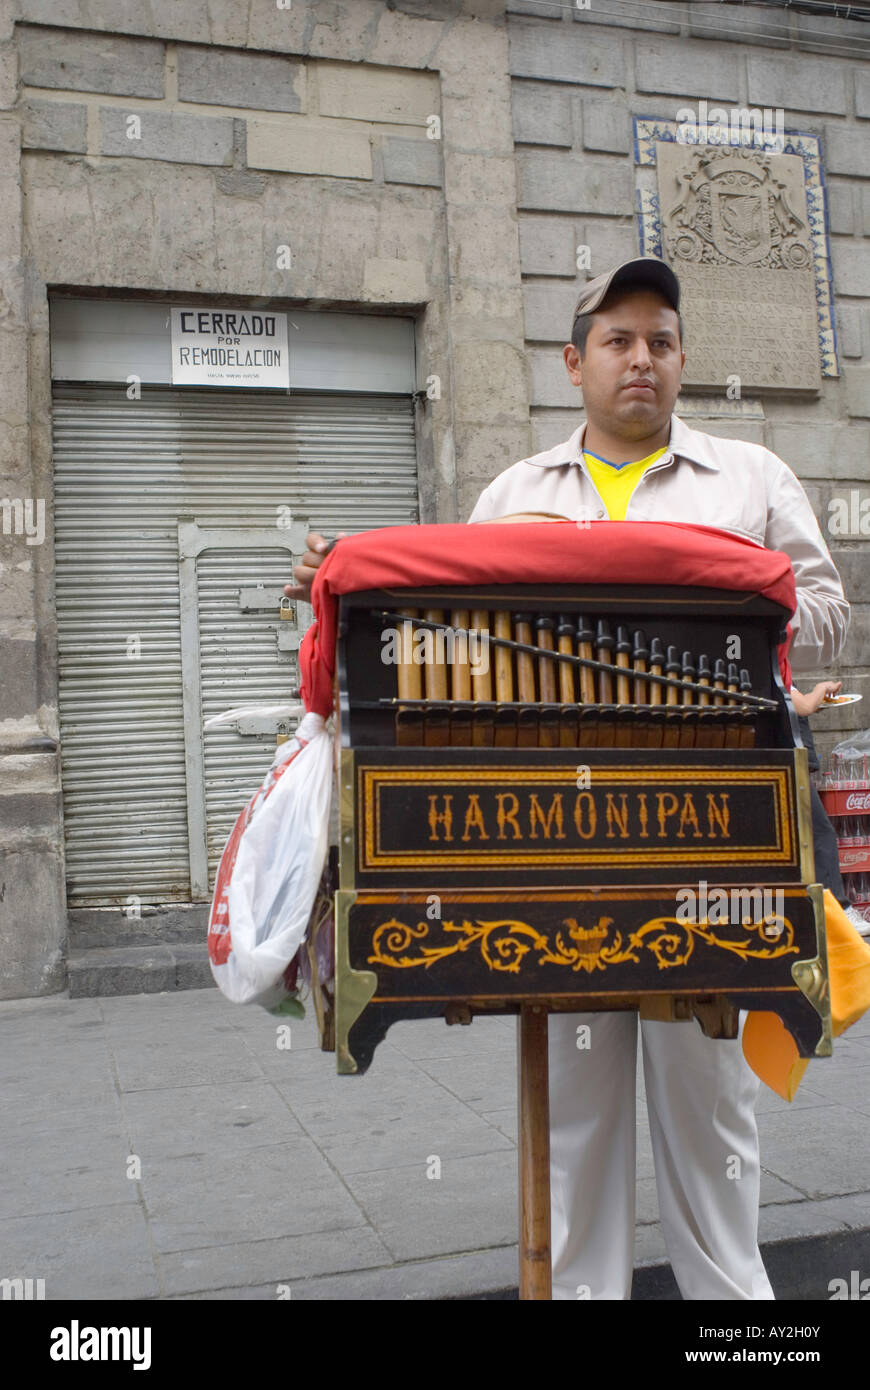 El Nivel cantina la plus ancienne dans la ville de Mexico a fermé il s portes. Un orgue de barbarie joue à l'extérieur du bar Banque D'Images